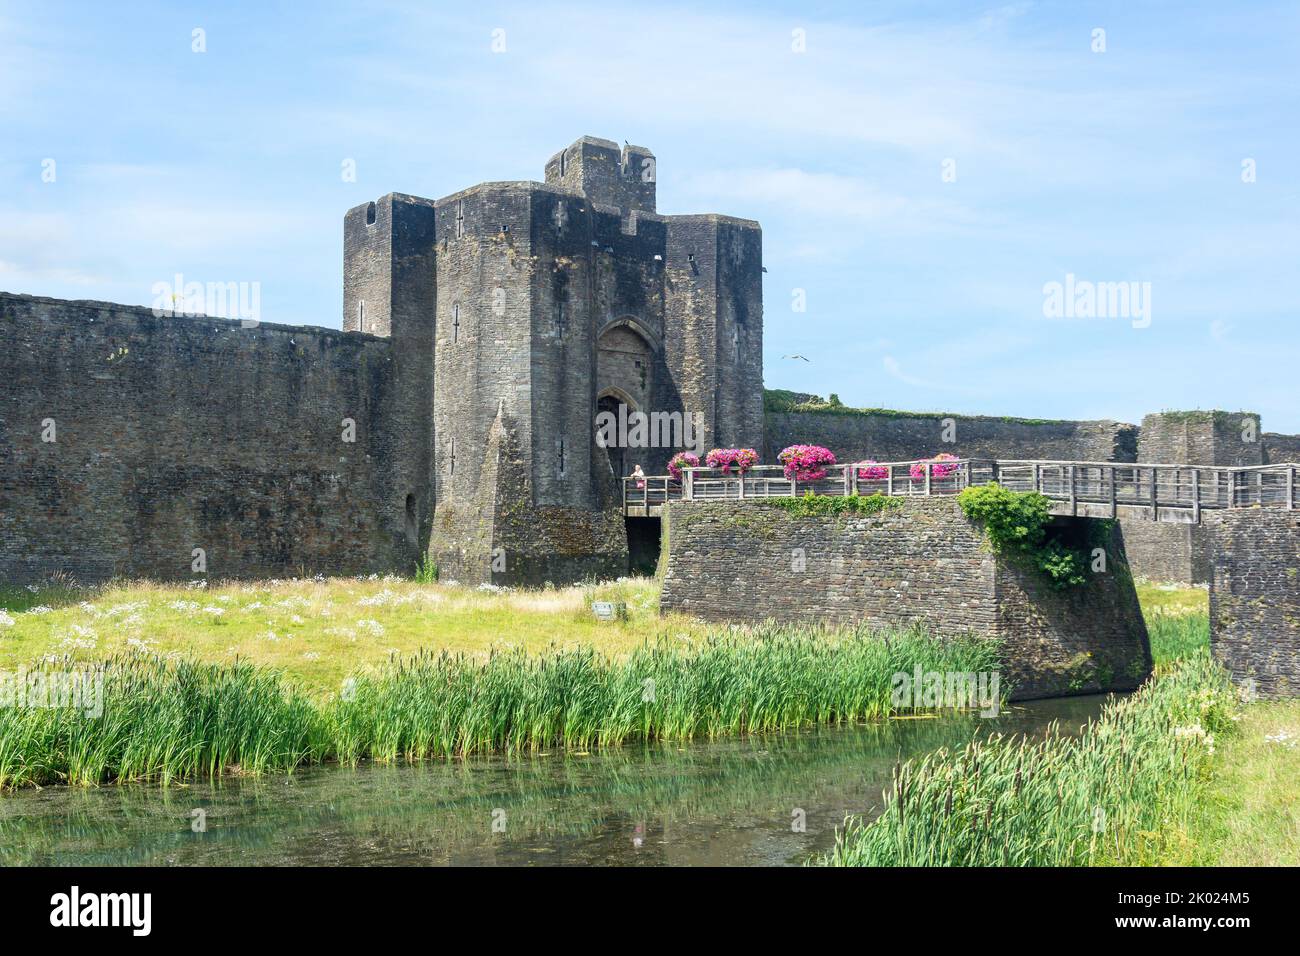 Main Gatehouse and Moat, Caerphilly Castle, Caerphilly (Caerffili), Caerphilly County Borough, Wales (Cymru), United Kingdom Stock Photo